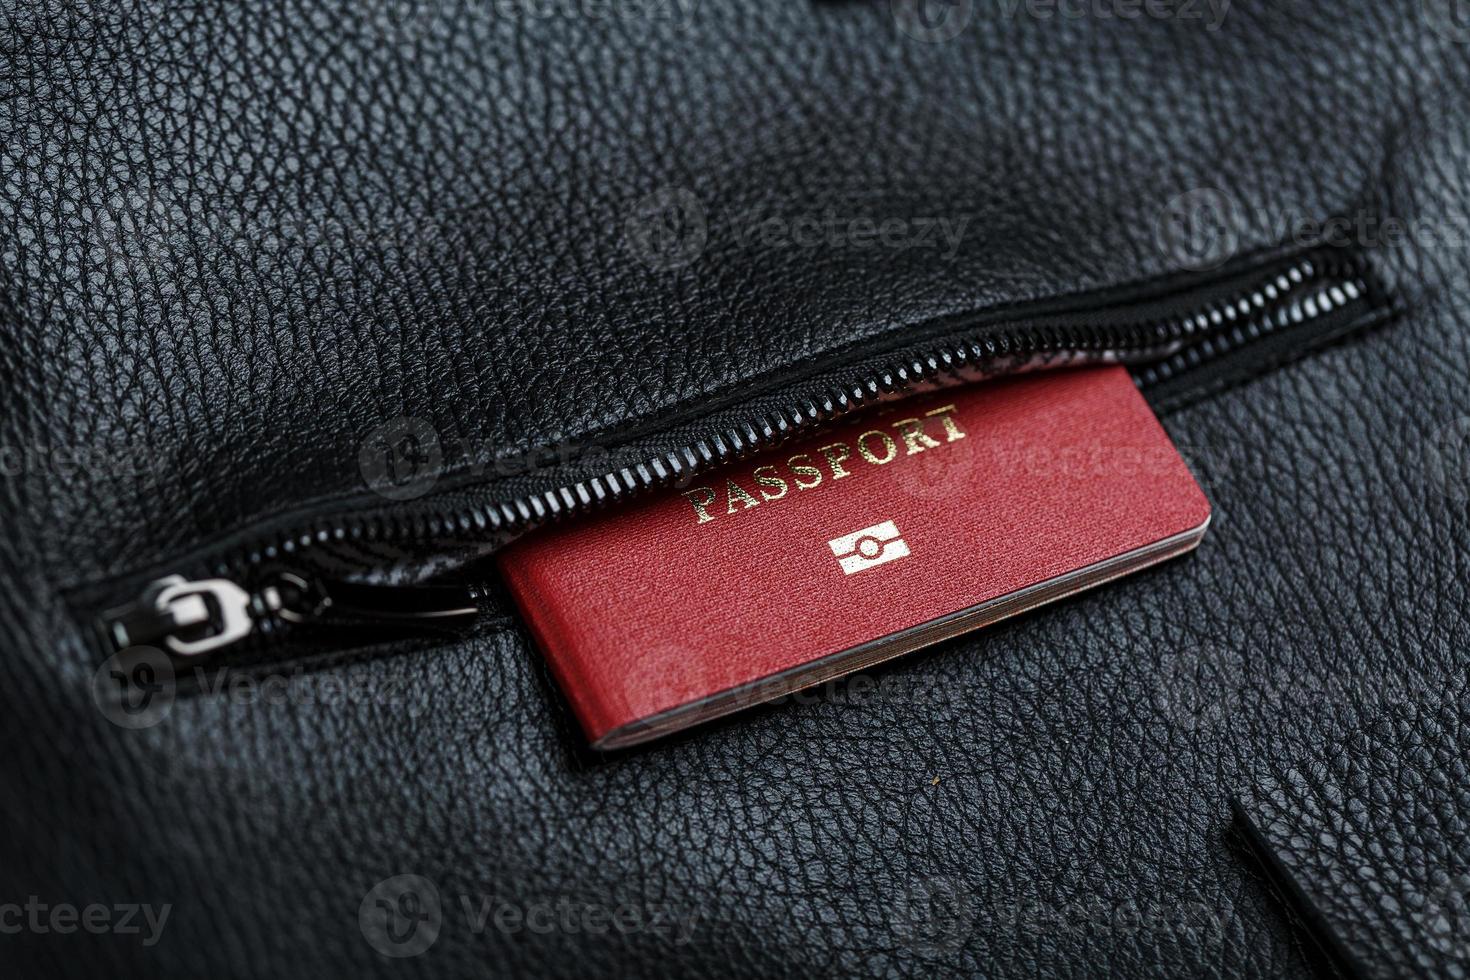 el pasaporte se ve fuera del bolsillo de un bolso de cuero negro, macro hecho a mano, materiales naturales. foto